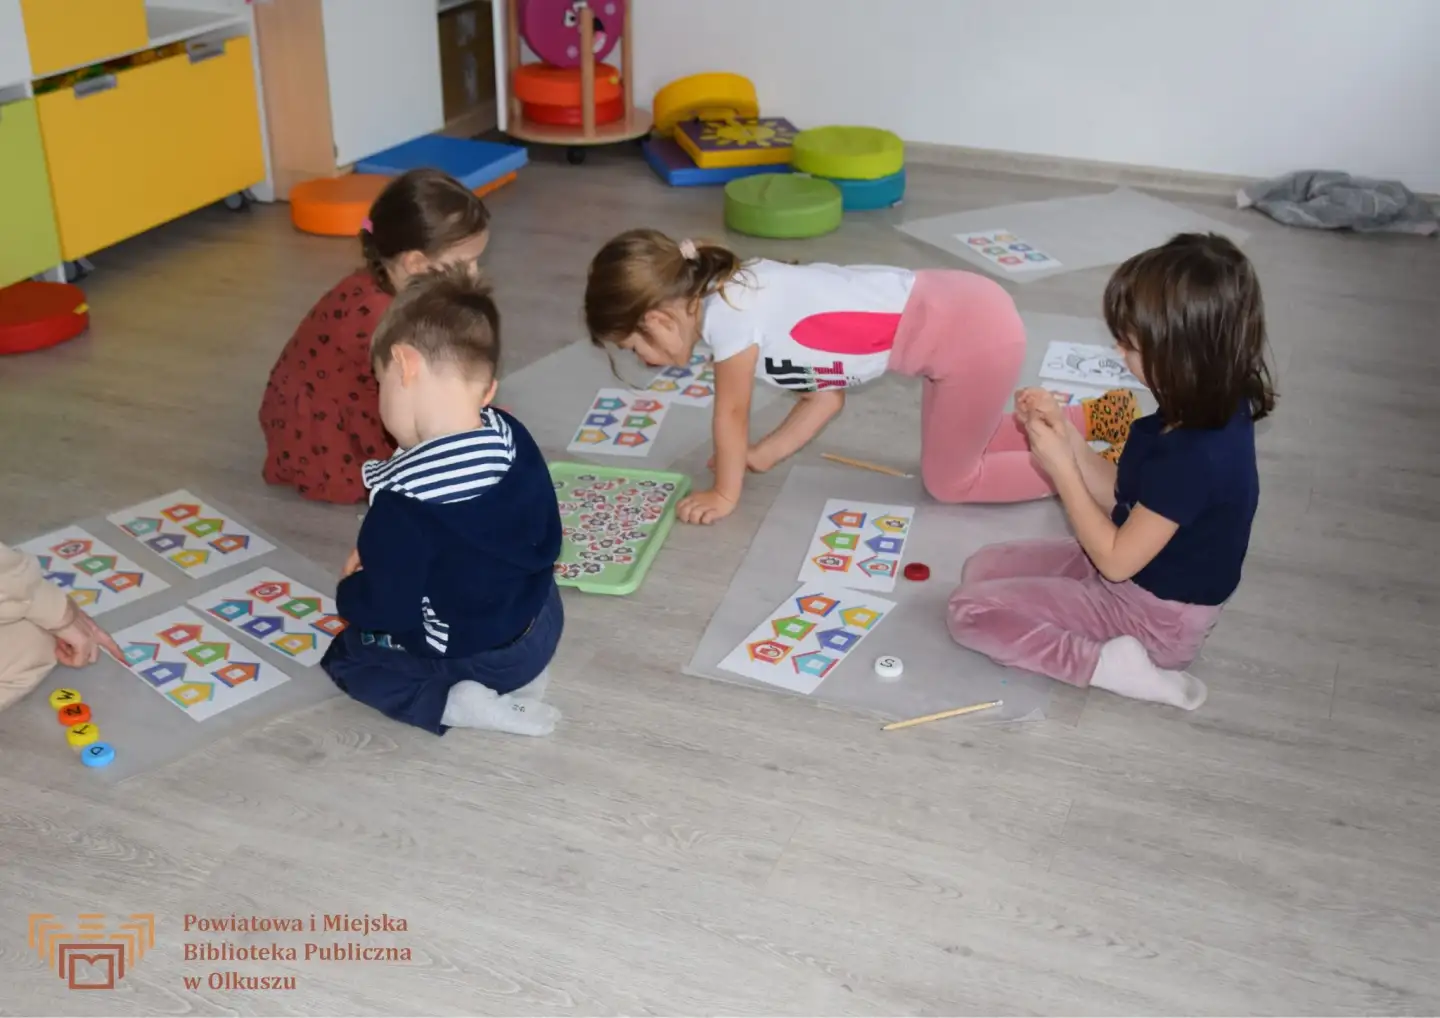 Zdjęcie zostało zrobione w salce edukacyjnej Biblioteki. Na zdjęciu widoczna jest grupa dzieci, które siedzą na podłodze i pracują z kartkami przedstawiającymi małe, kolorowe domki.